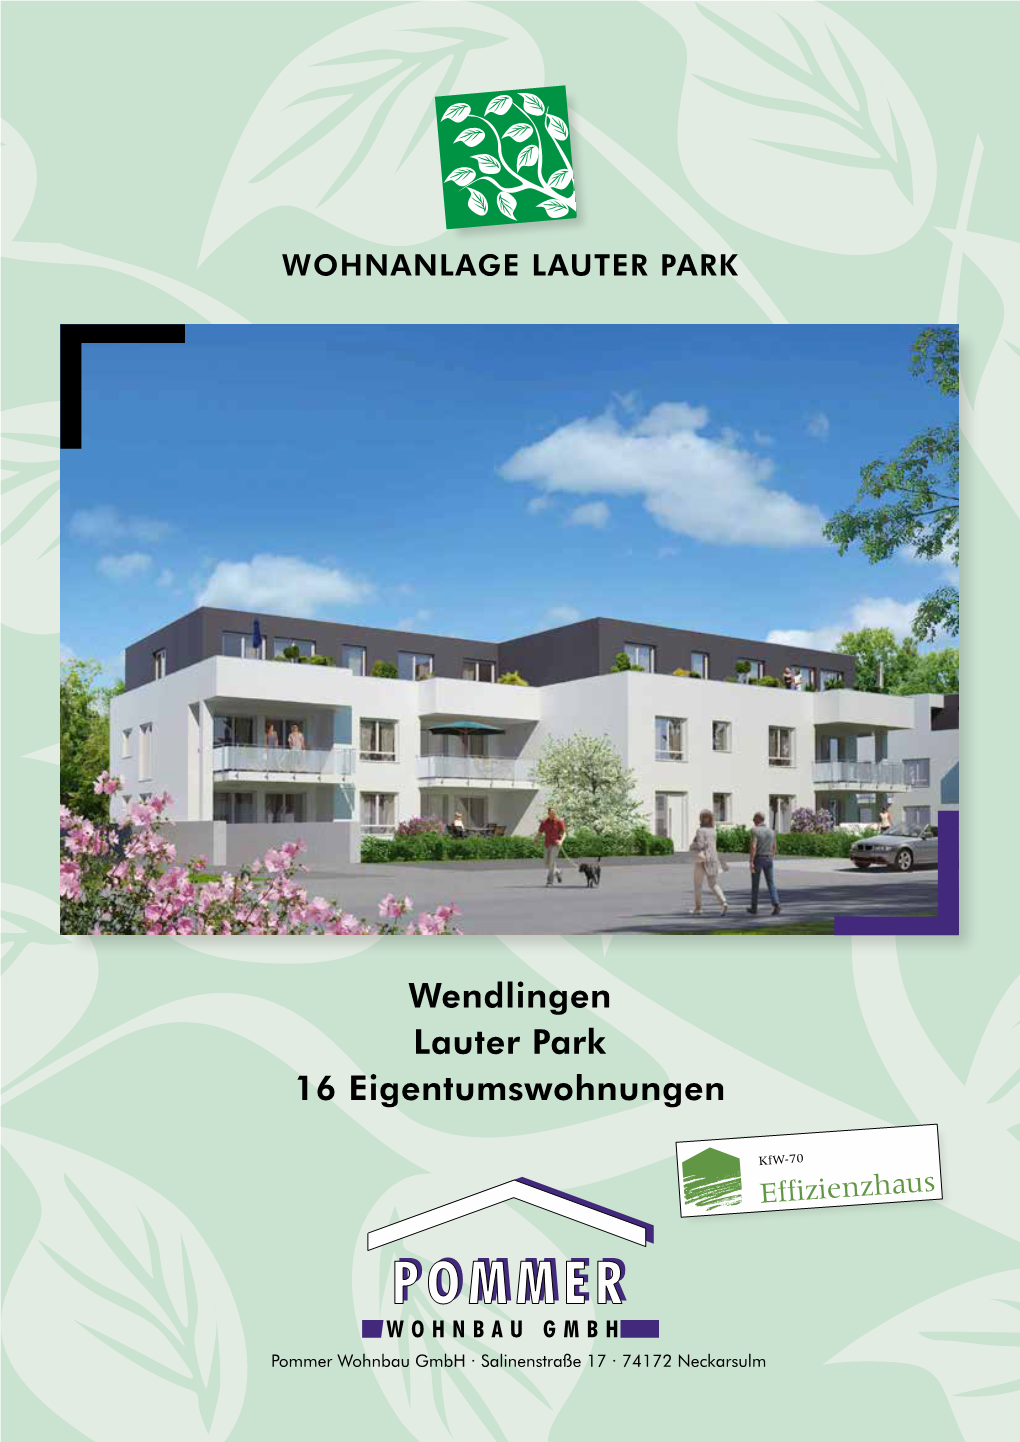 Wendlingen Lauter Park 16 Eigentumswohnungen